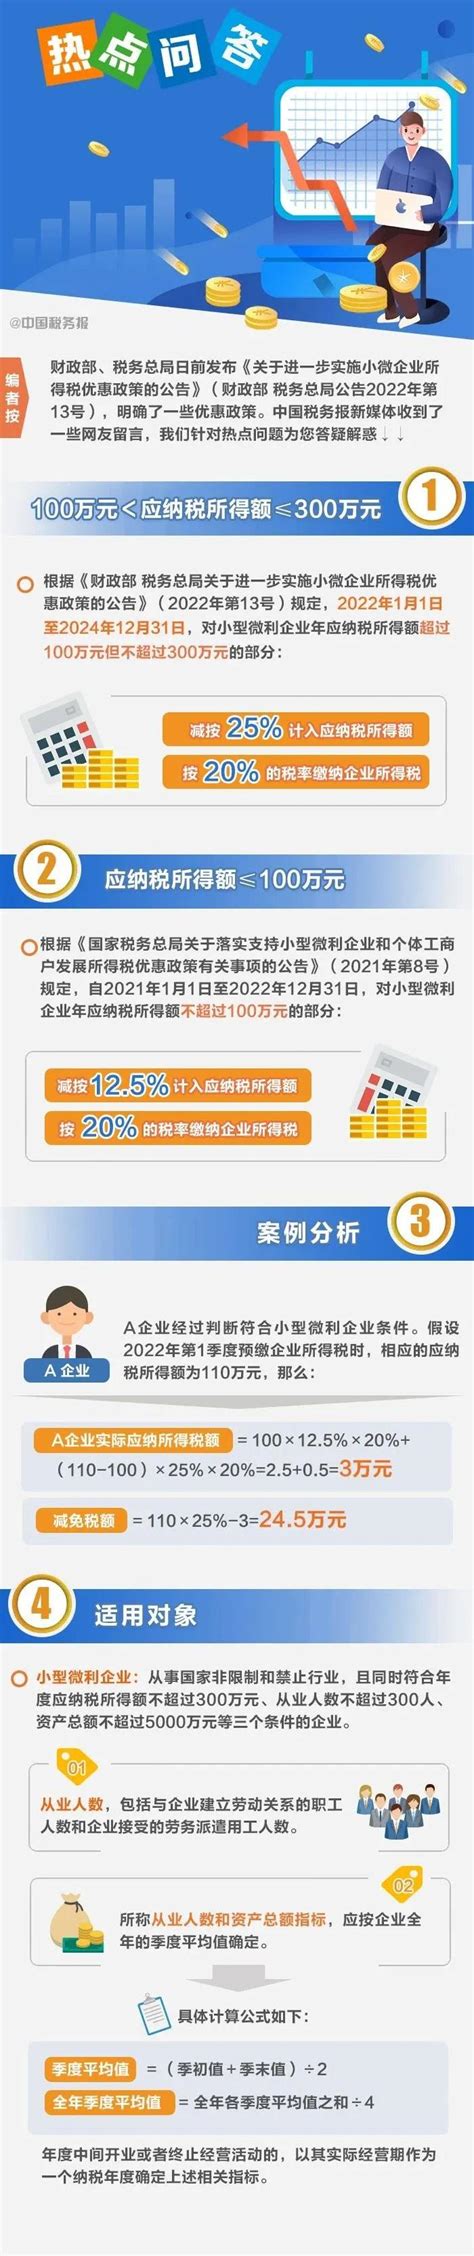 上海企业所得税优惠